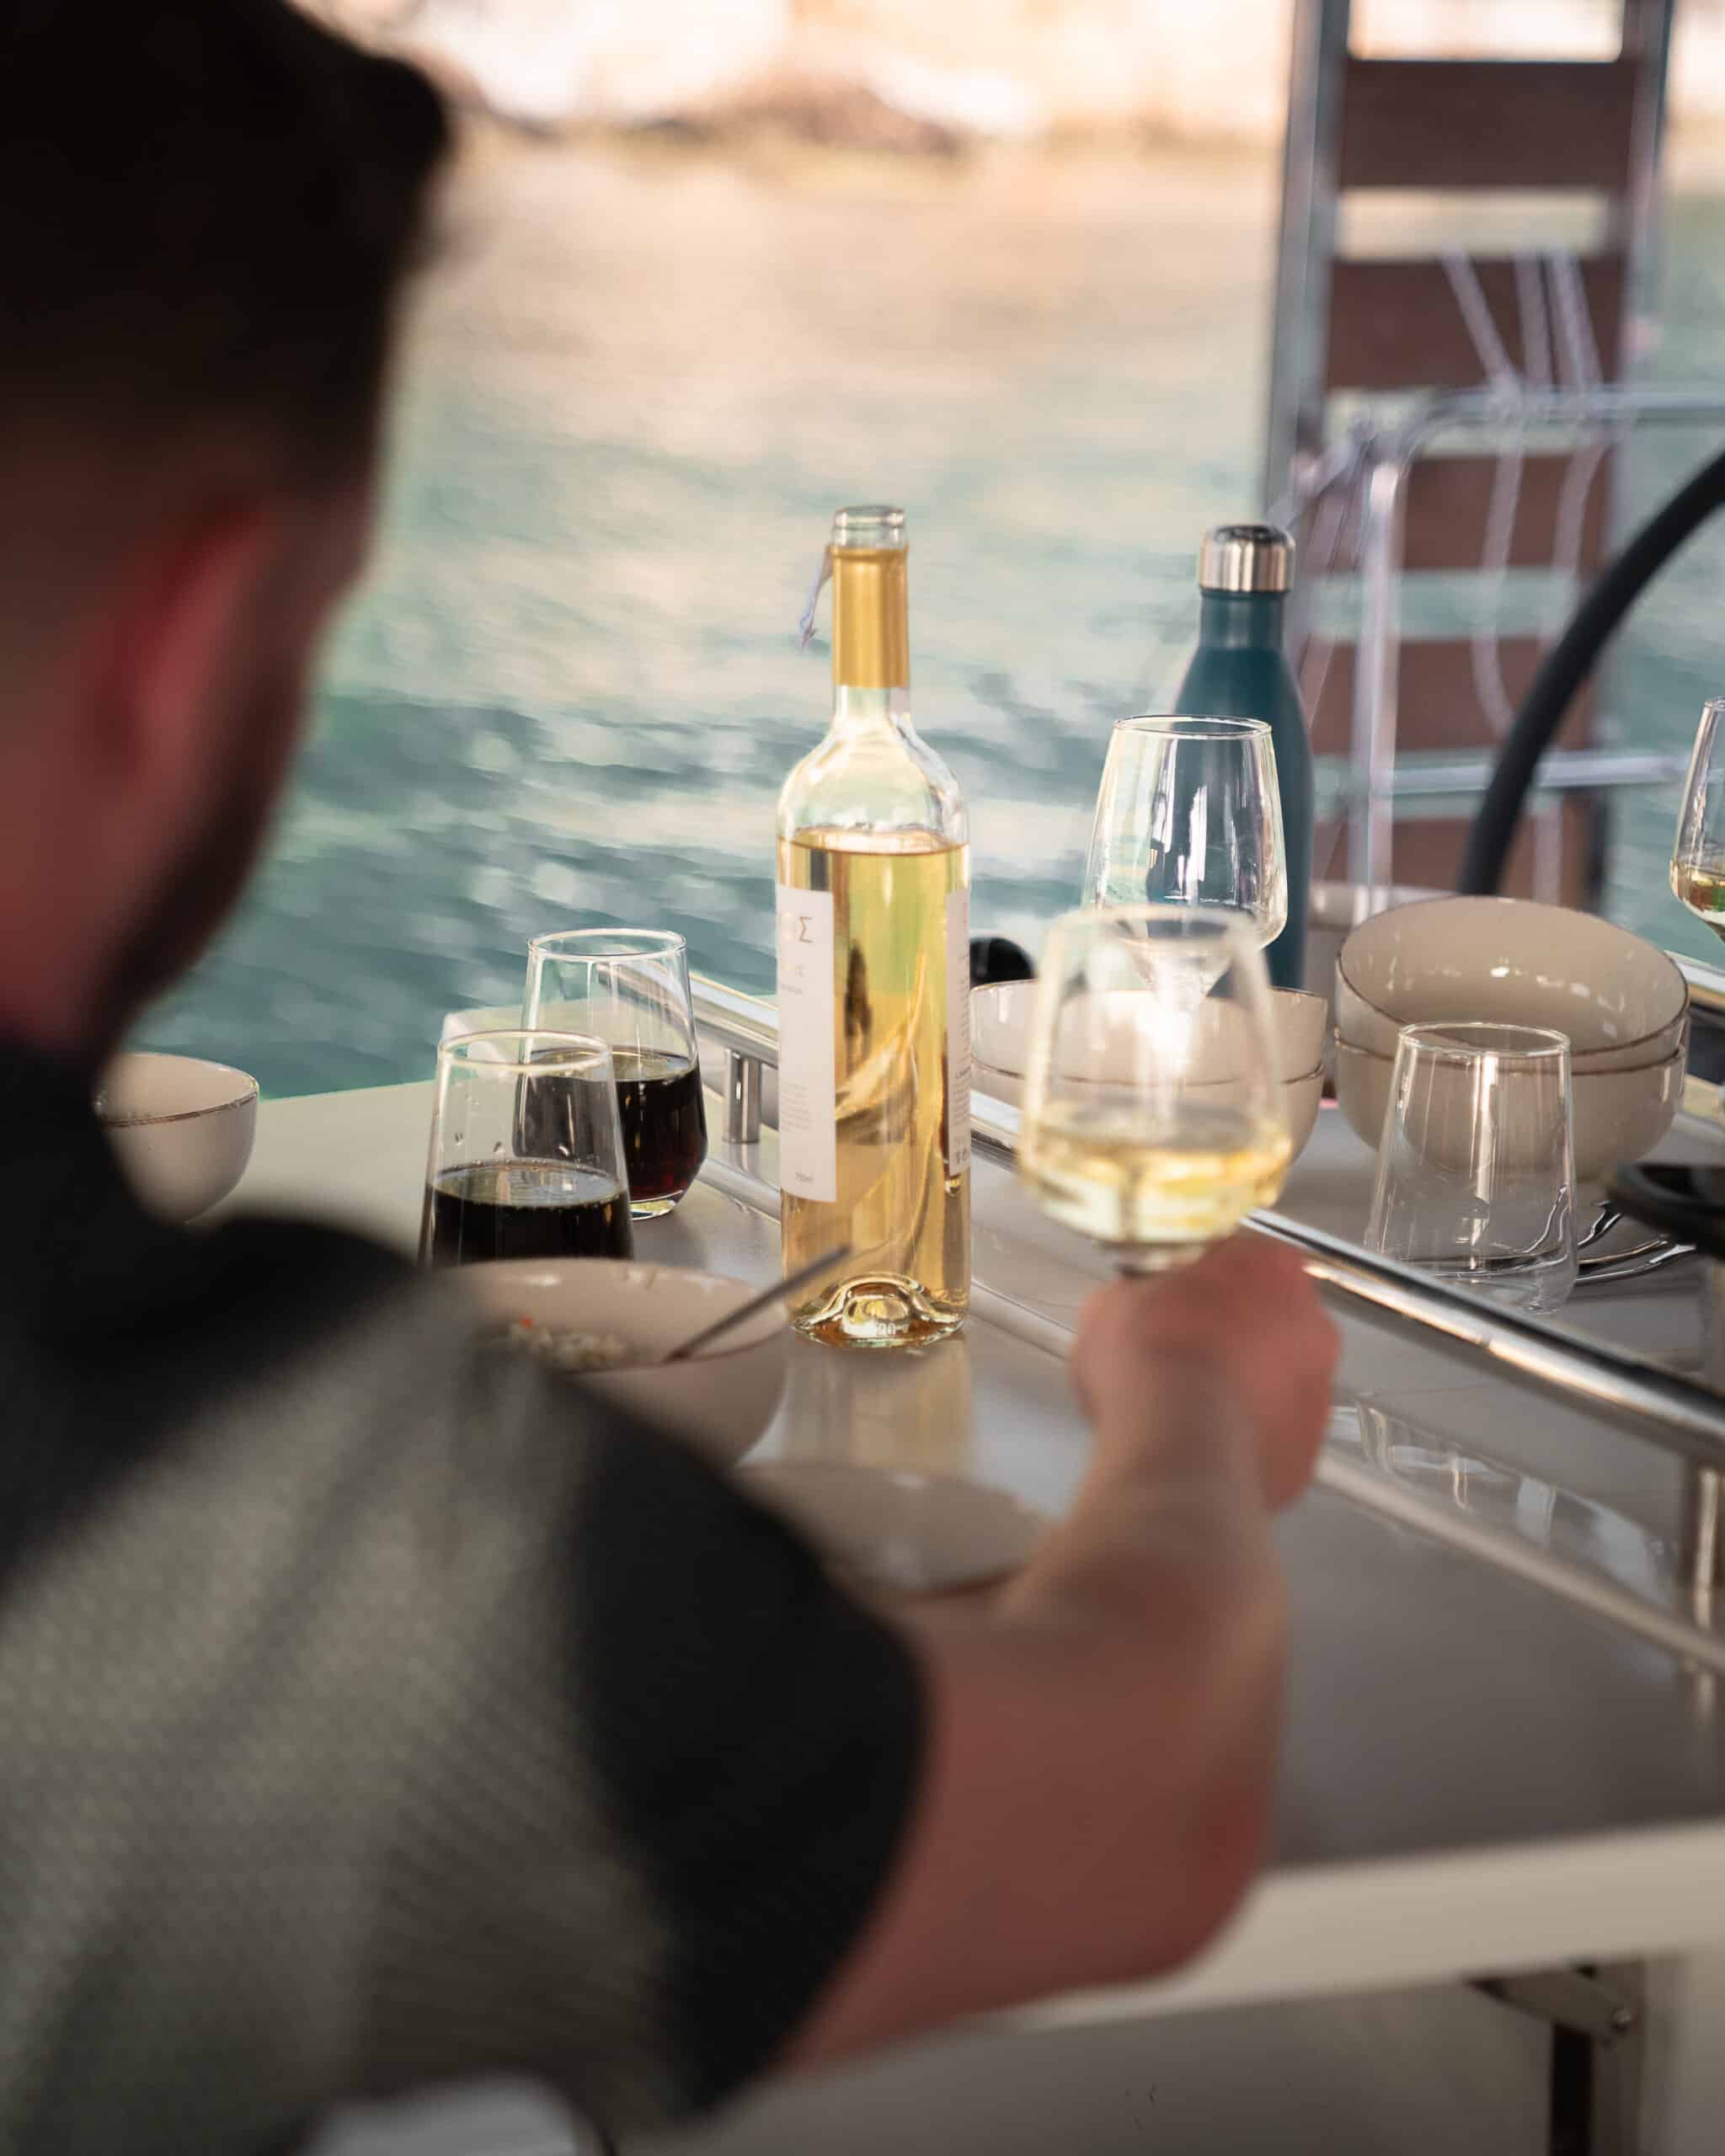 Eine Person sitzt an einem Tisch mit drei Gläsern Wein, einer Flasche Weißwein und einer Wasserflasche. Der Tisch steht vor der Kulisse eines Gewässers, was an ein Essen im Freien oder ein Segelerlebnis erinnert. Die Person greift nach einem Glas Weißwein.